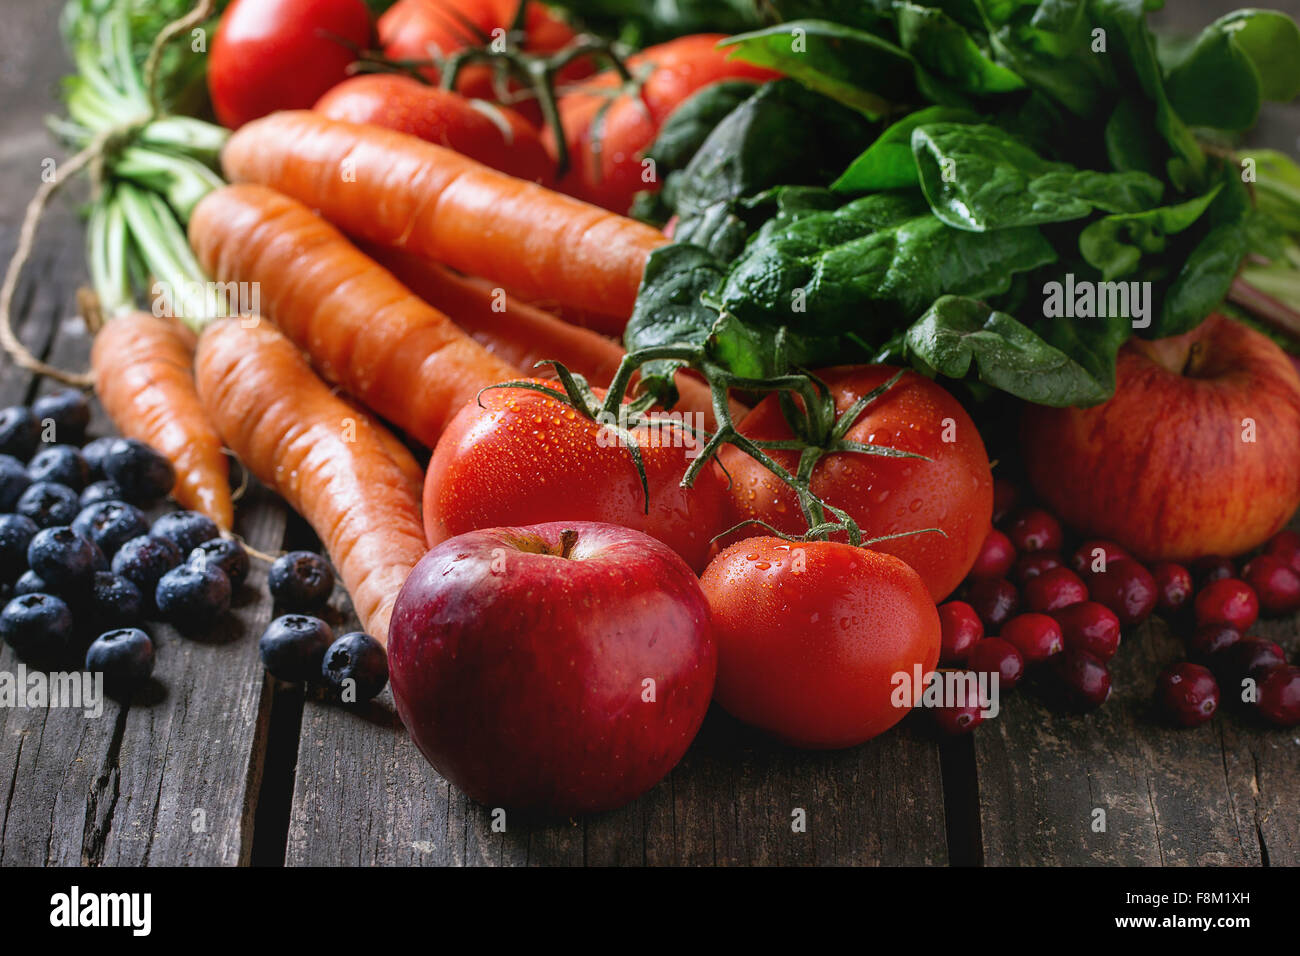 Surtido de frutas, verduras y bayas de la zanahoria, las espinacas, los tomates, las manzanas rojas, moras y arándanos más viejo w Foto de stock